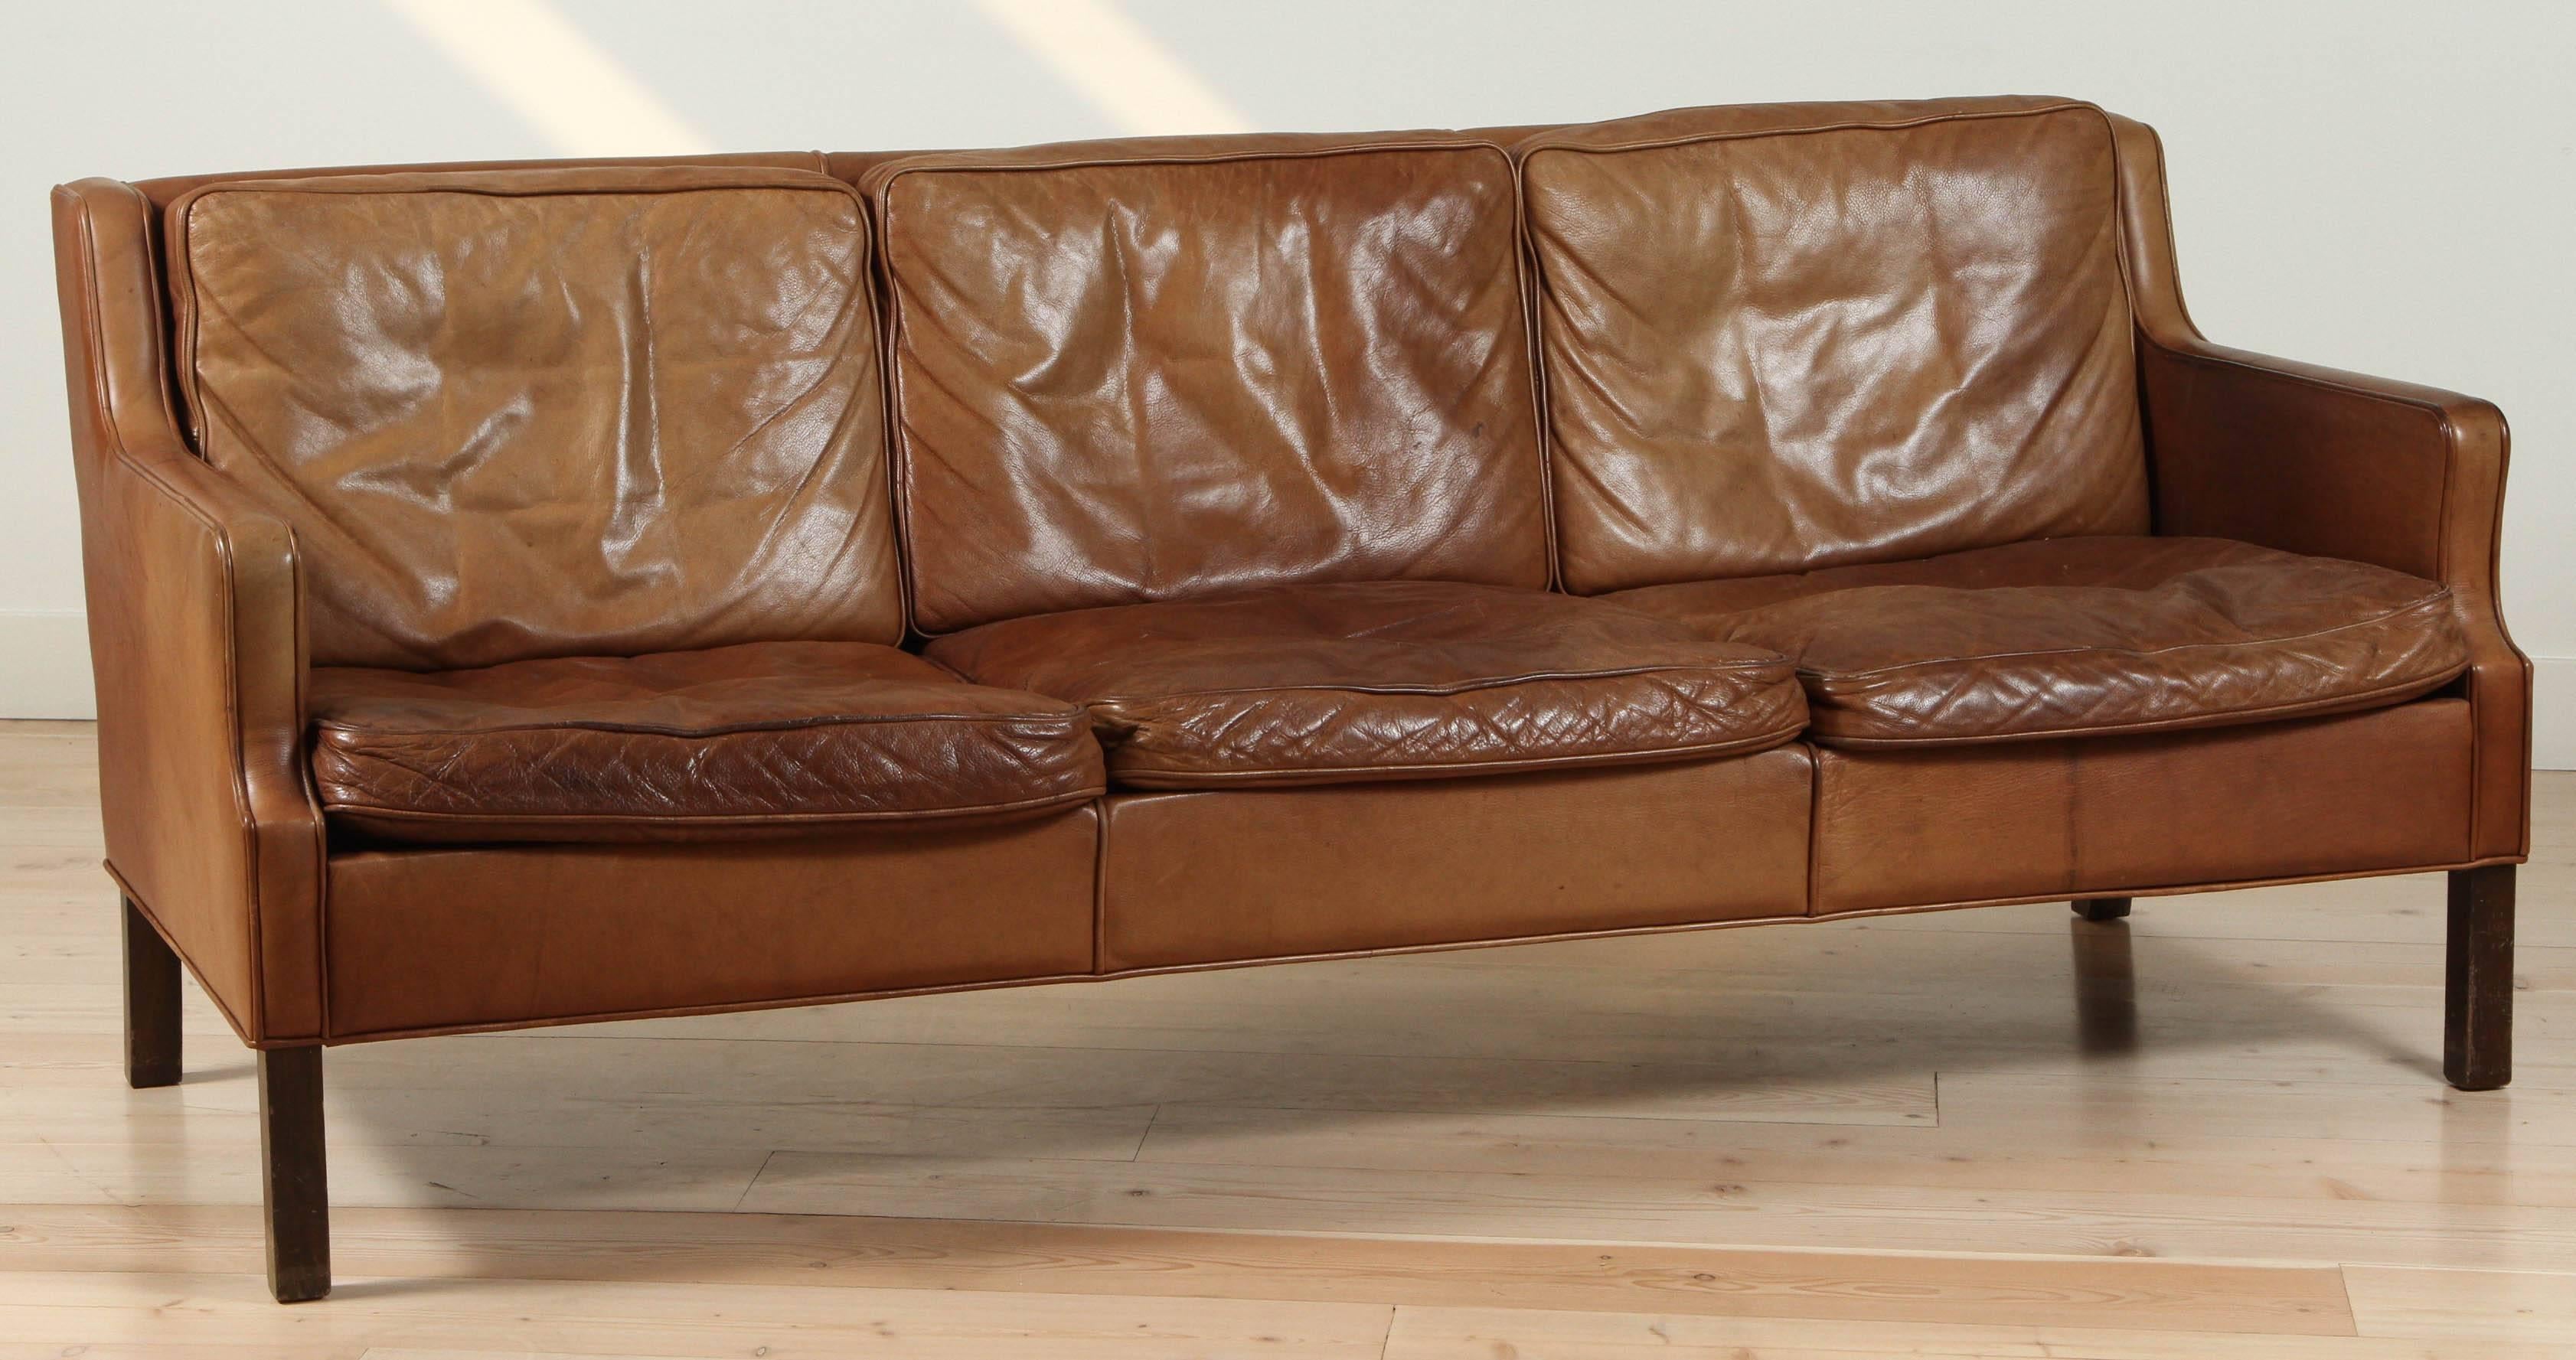 Saddle leather sofa by Børge Mogensen. Model 2209.